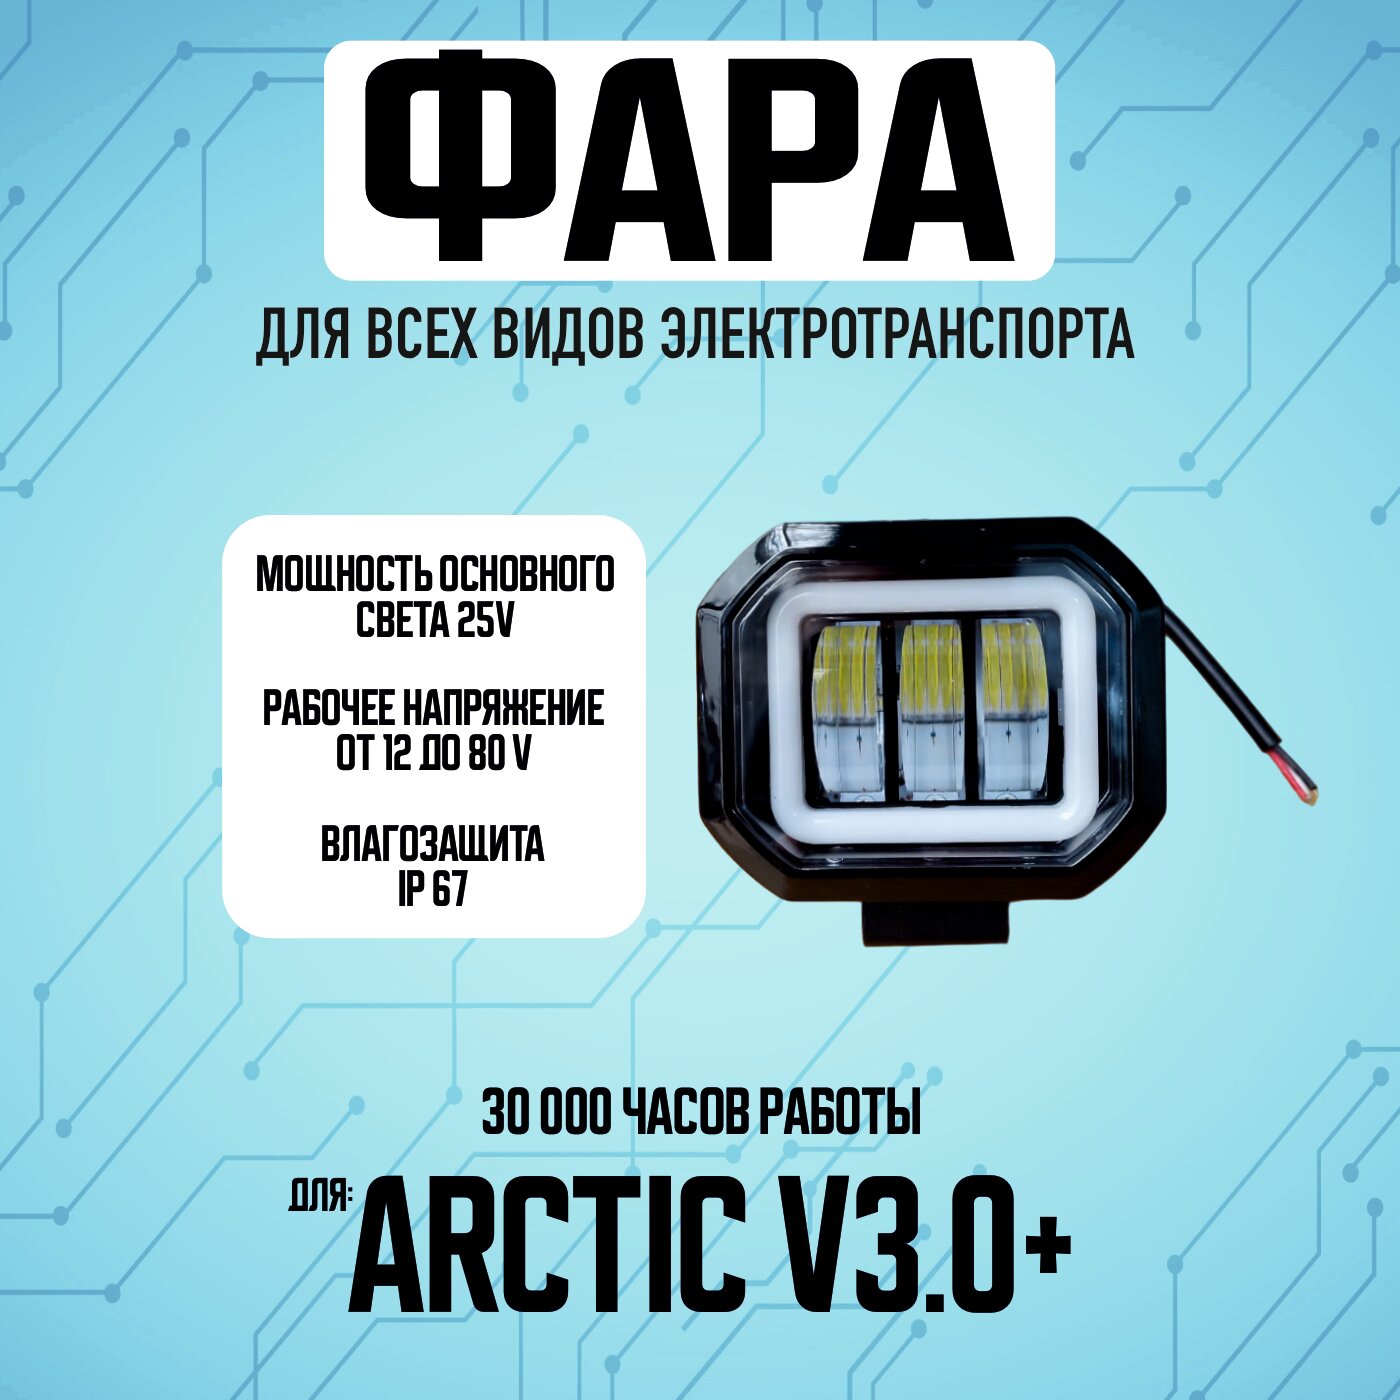 Противотуманная светодиодная фара Arctic v3.0+ для всех видов электротранспорта / Прямоугольной формы /2 диода птф дхо